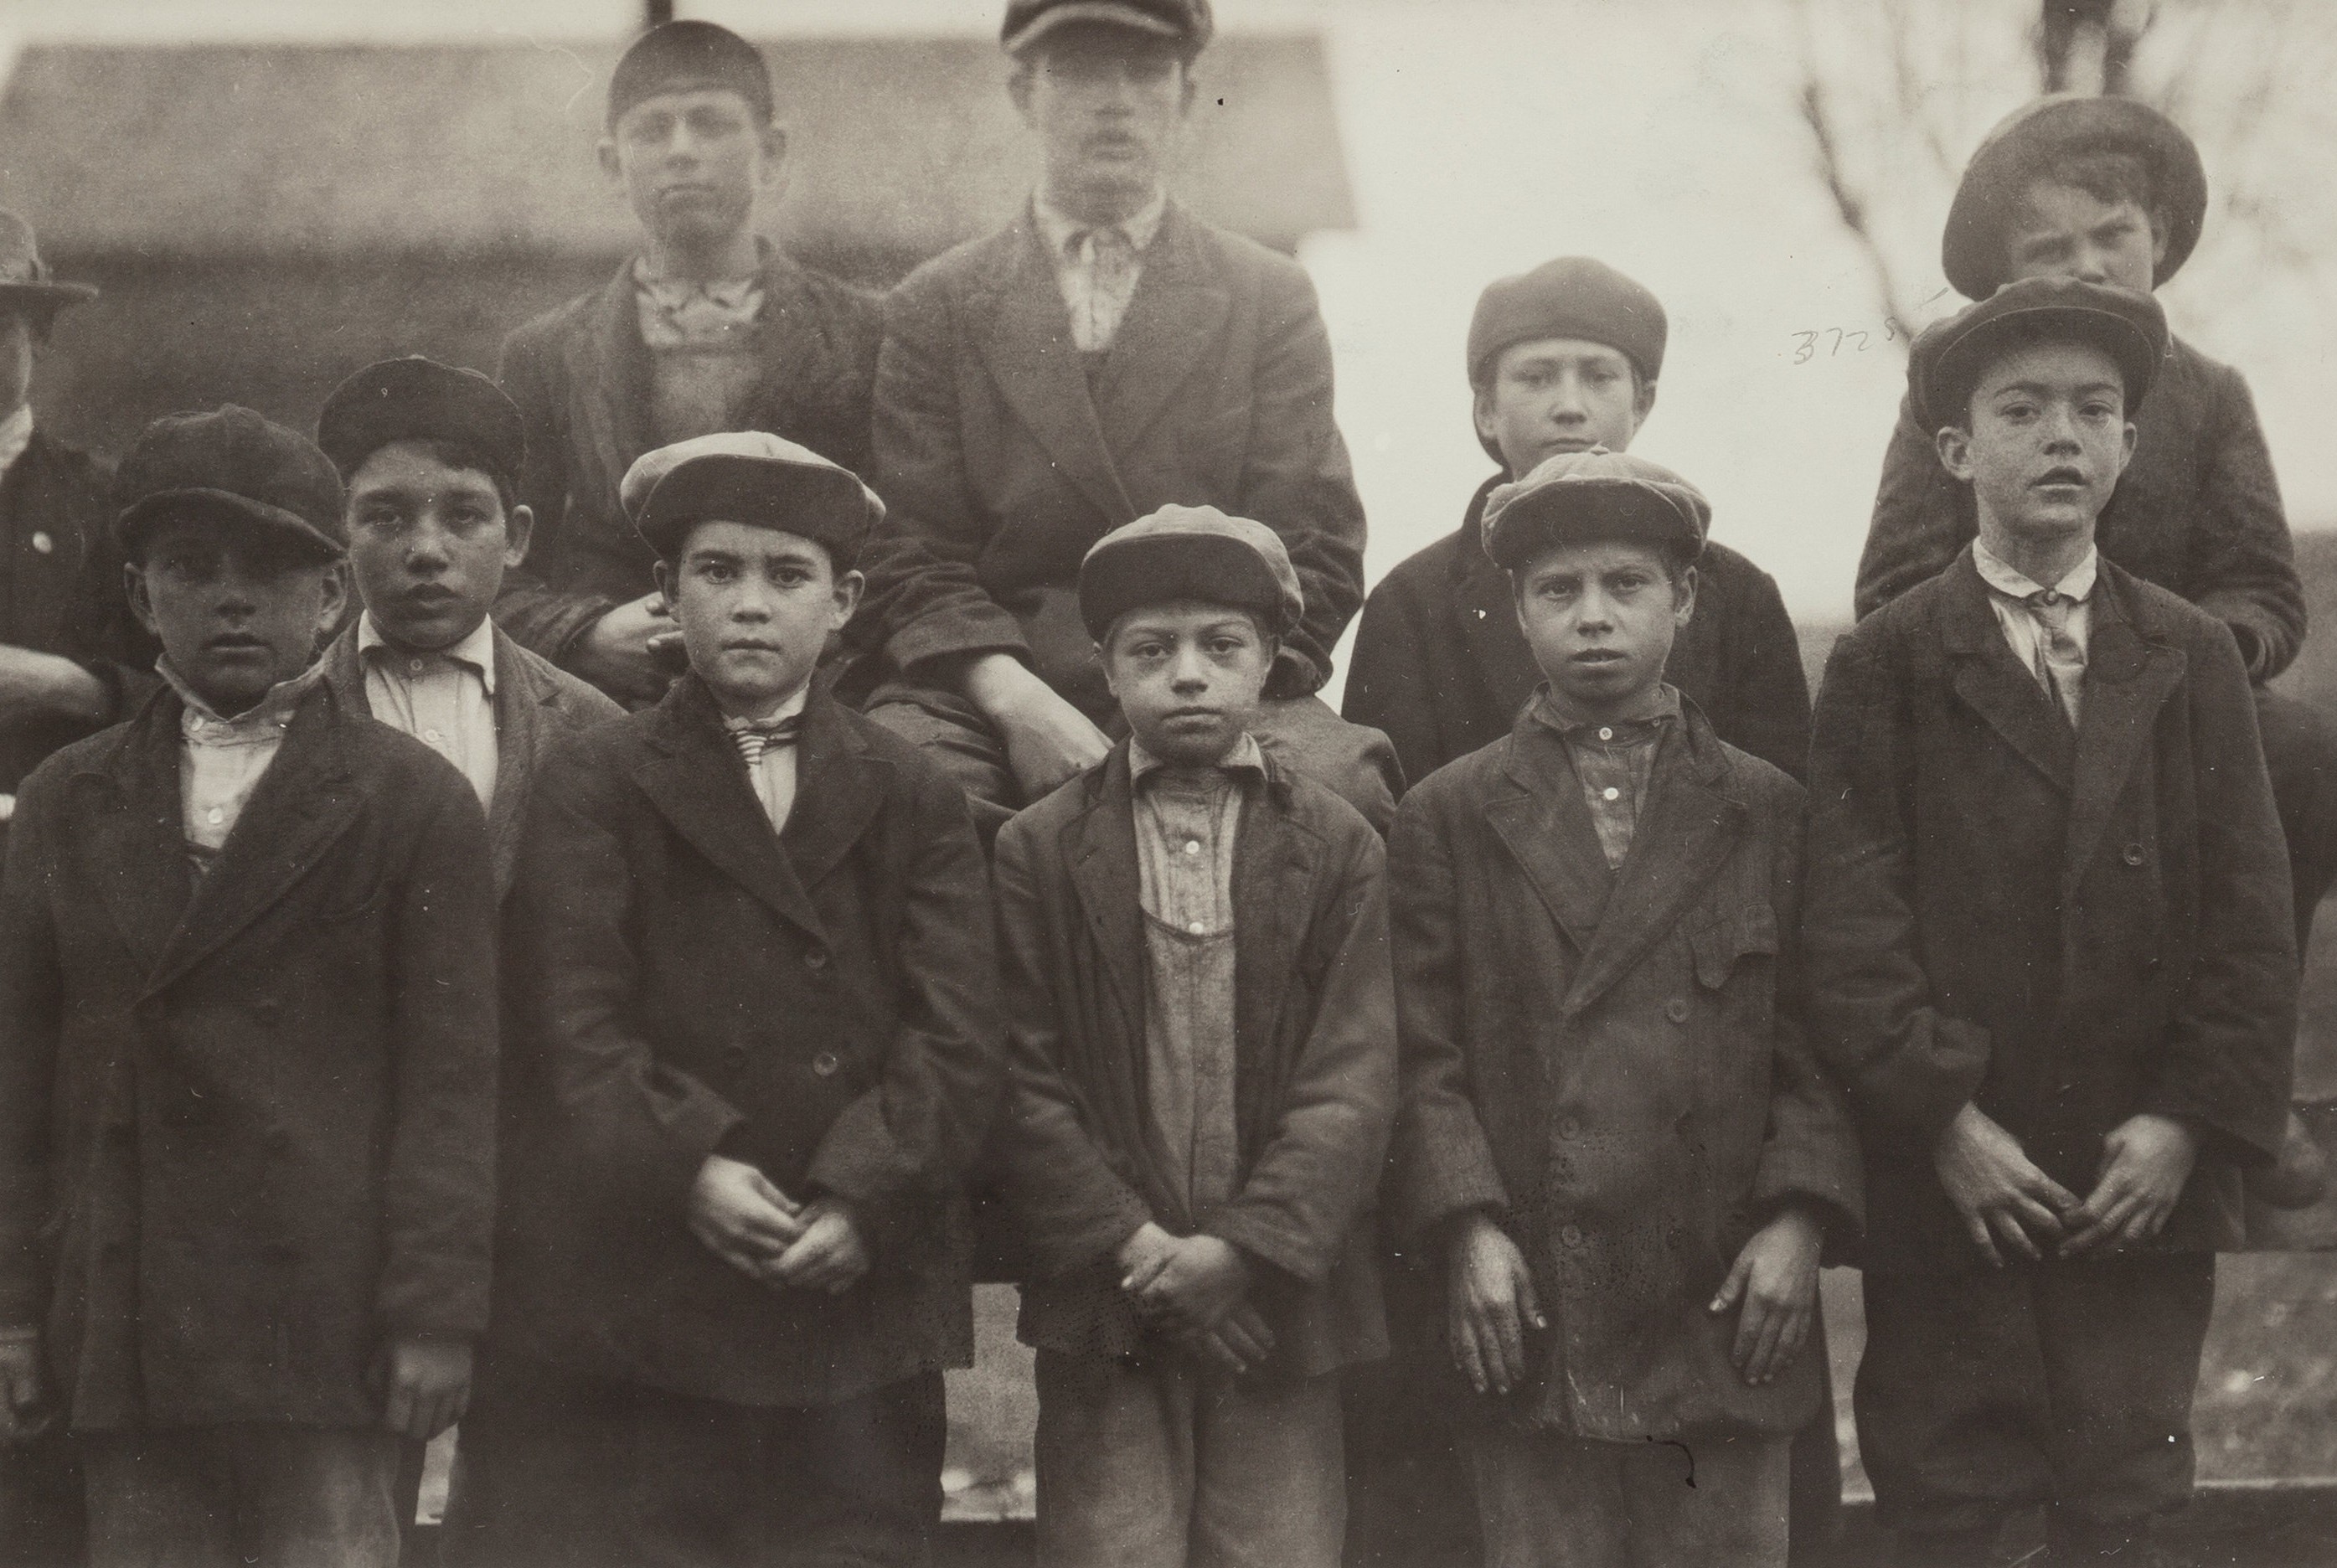 Самые юные рабочие, Мерримак, около 1910 г. Фотограф Льюис Хайн